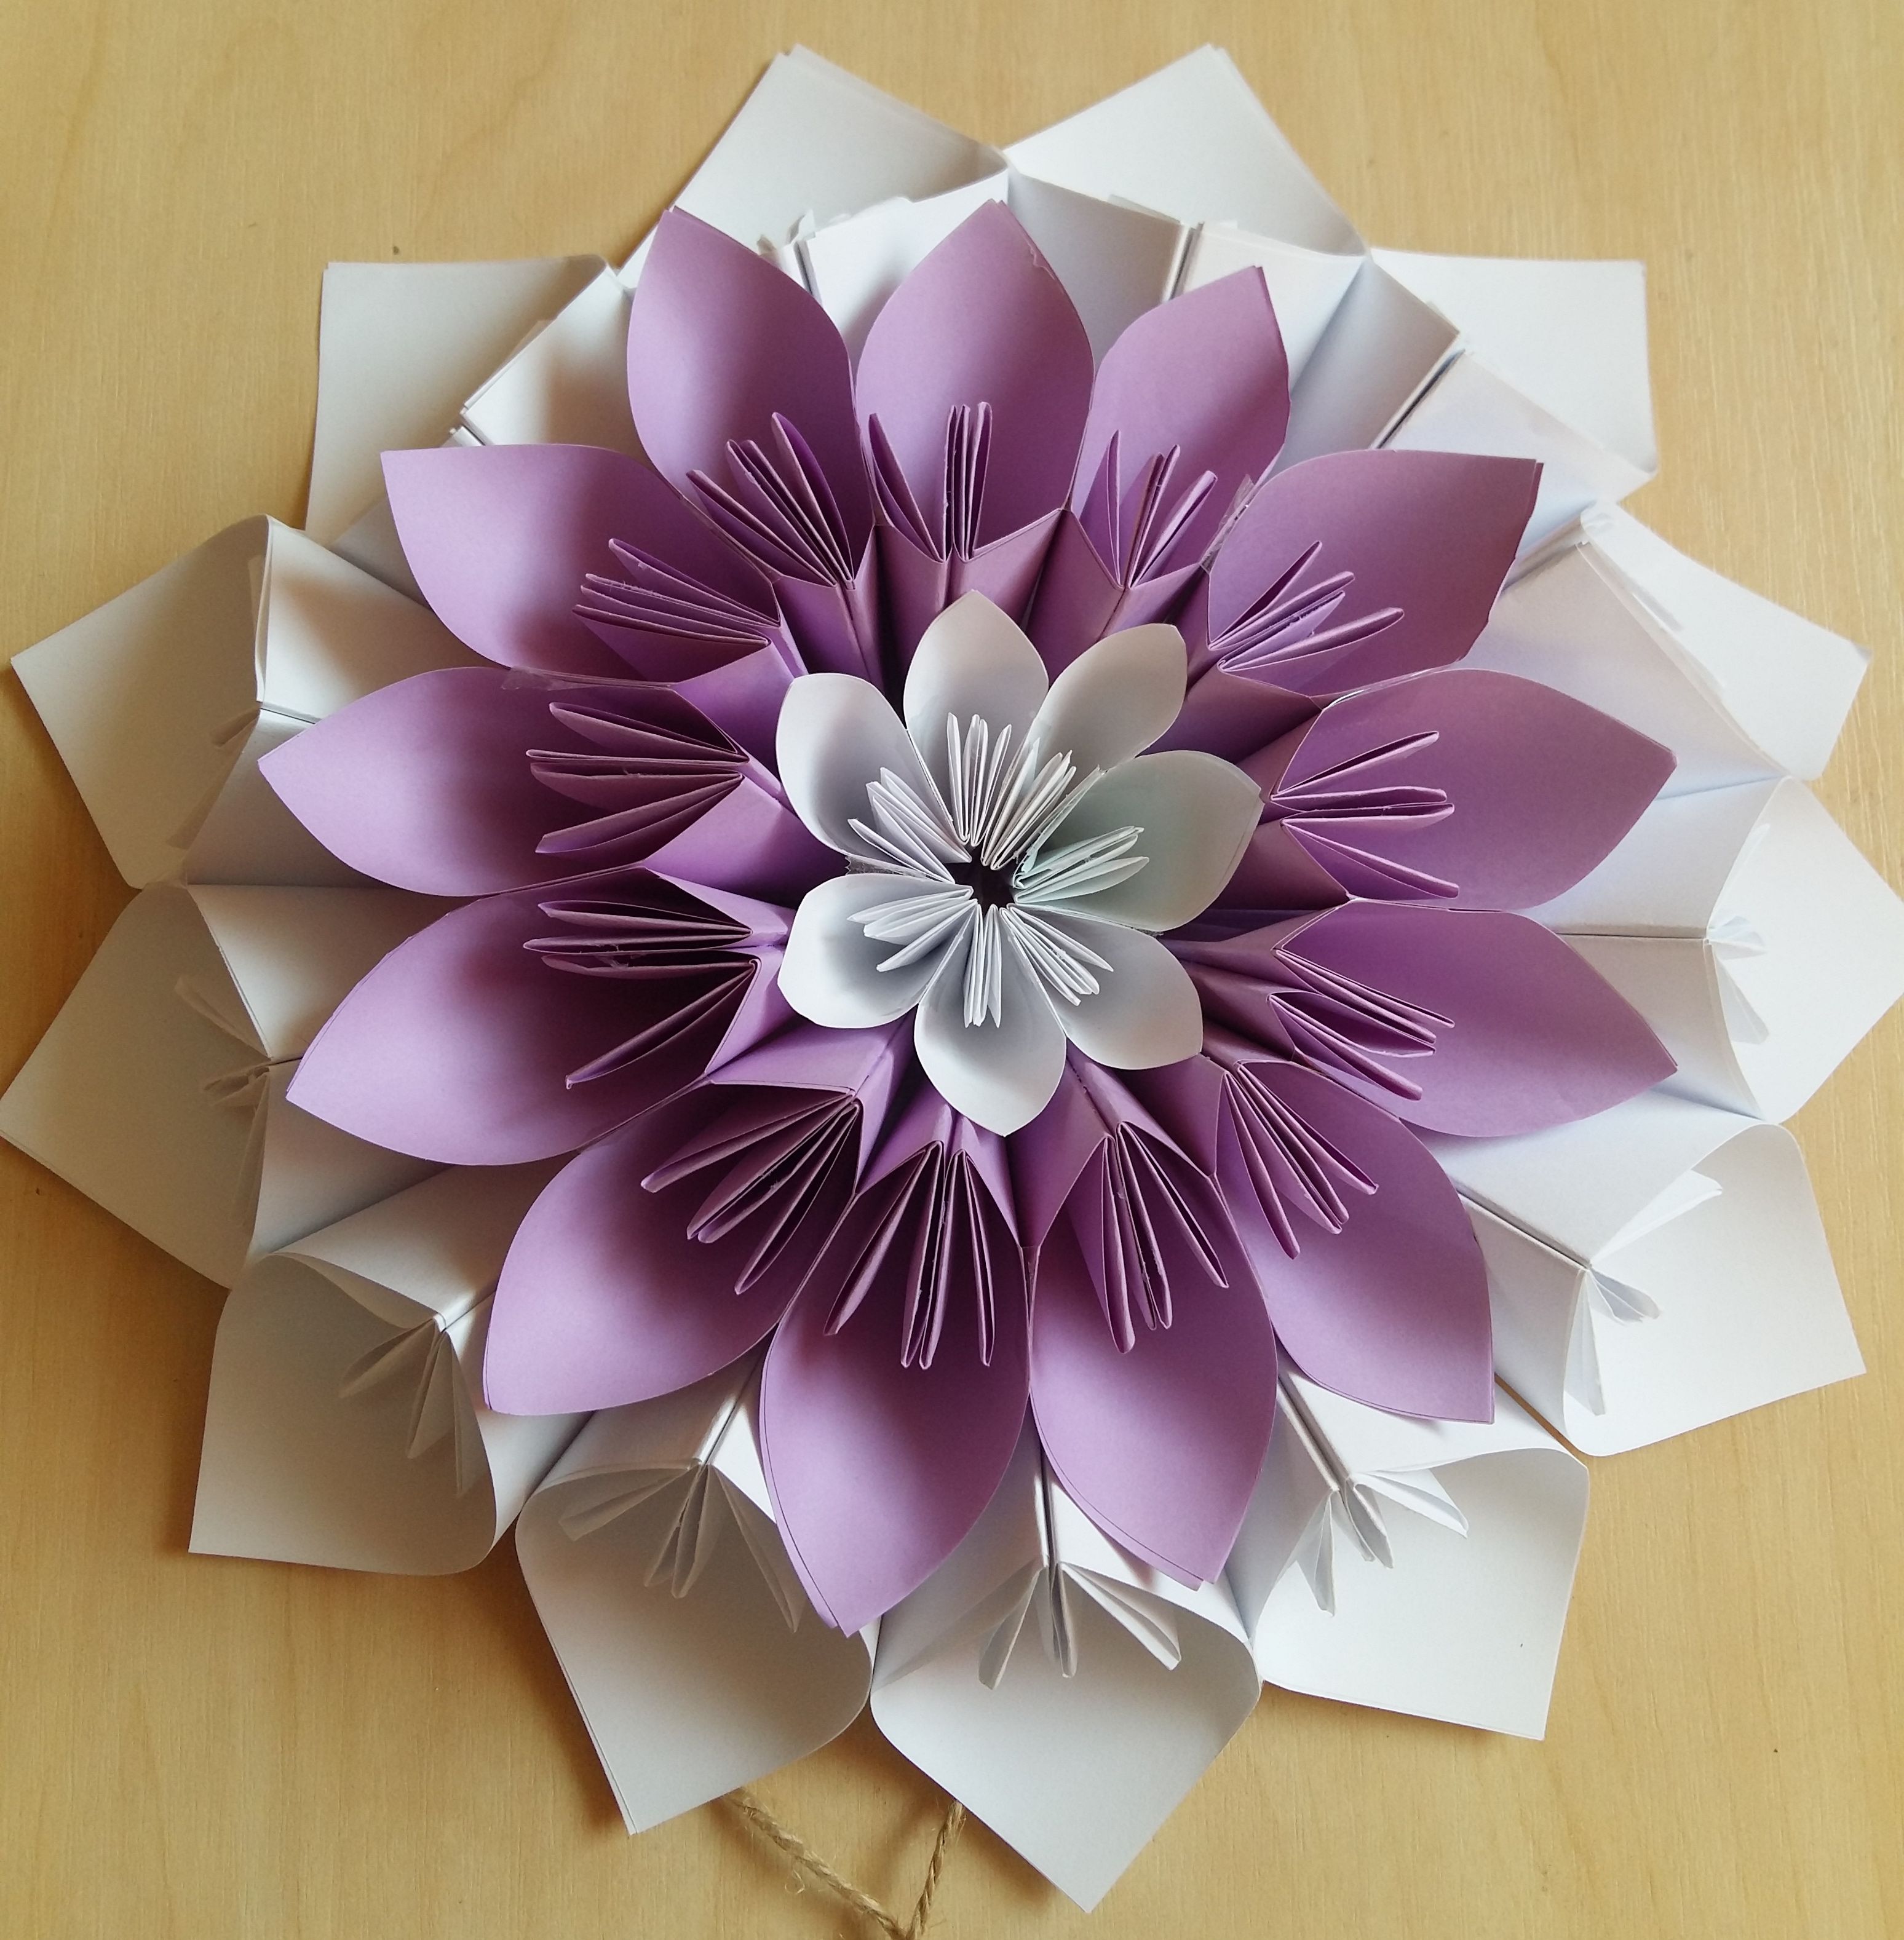 Изготовление цветов из бумаги: Цветок из бумаги: подборки мастер-классов, статей, публикаций о рукоделии и творчестве